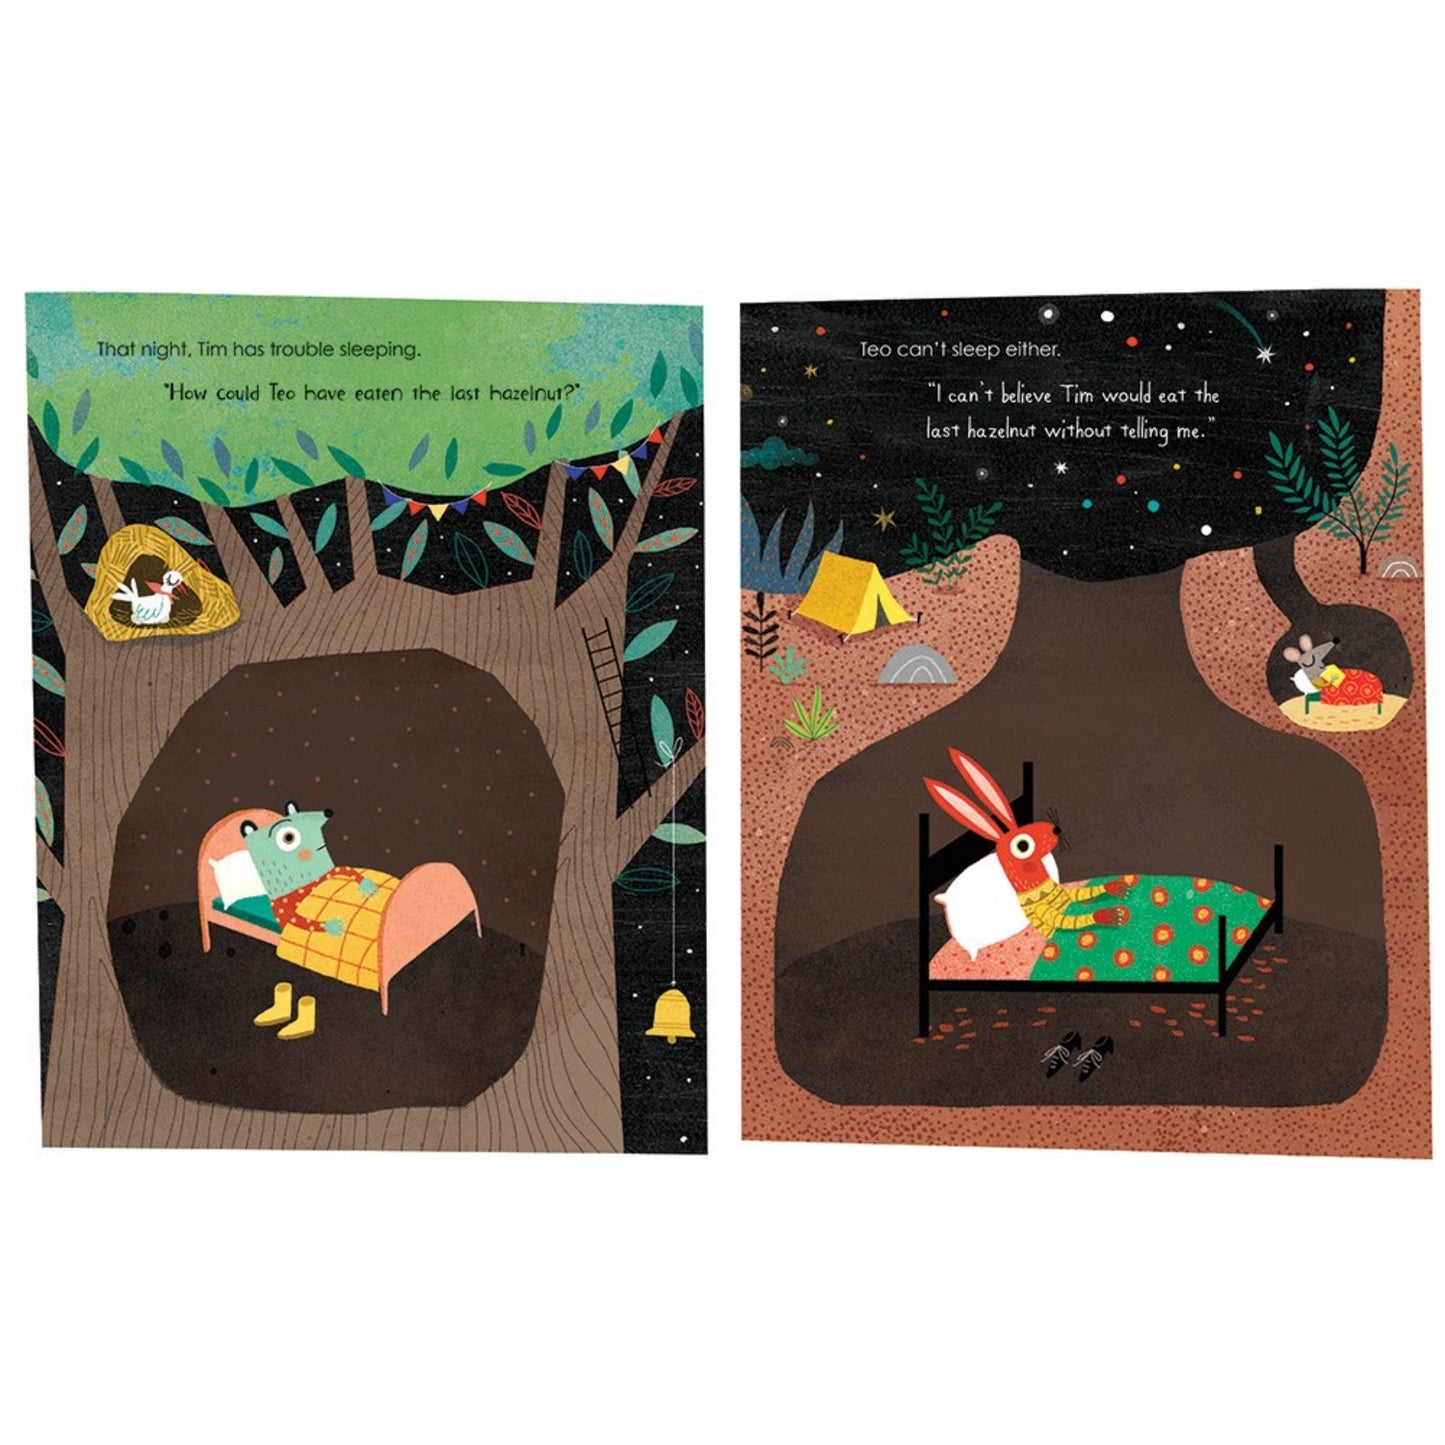 The Last Hazelnut | Children’s Book on Friendship